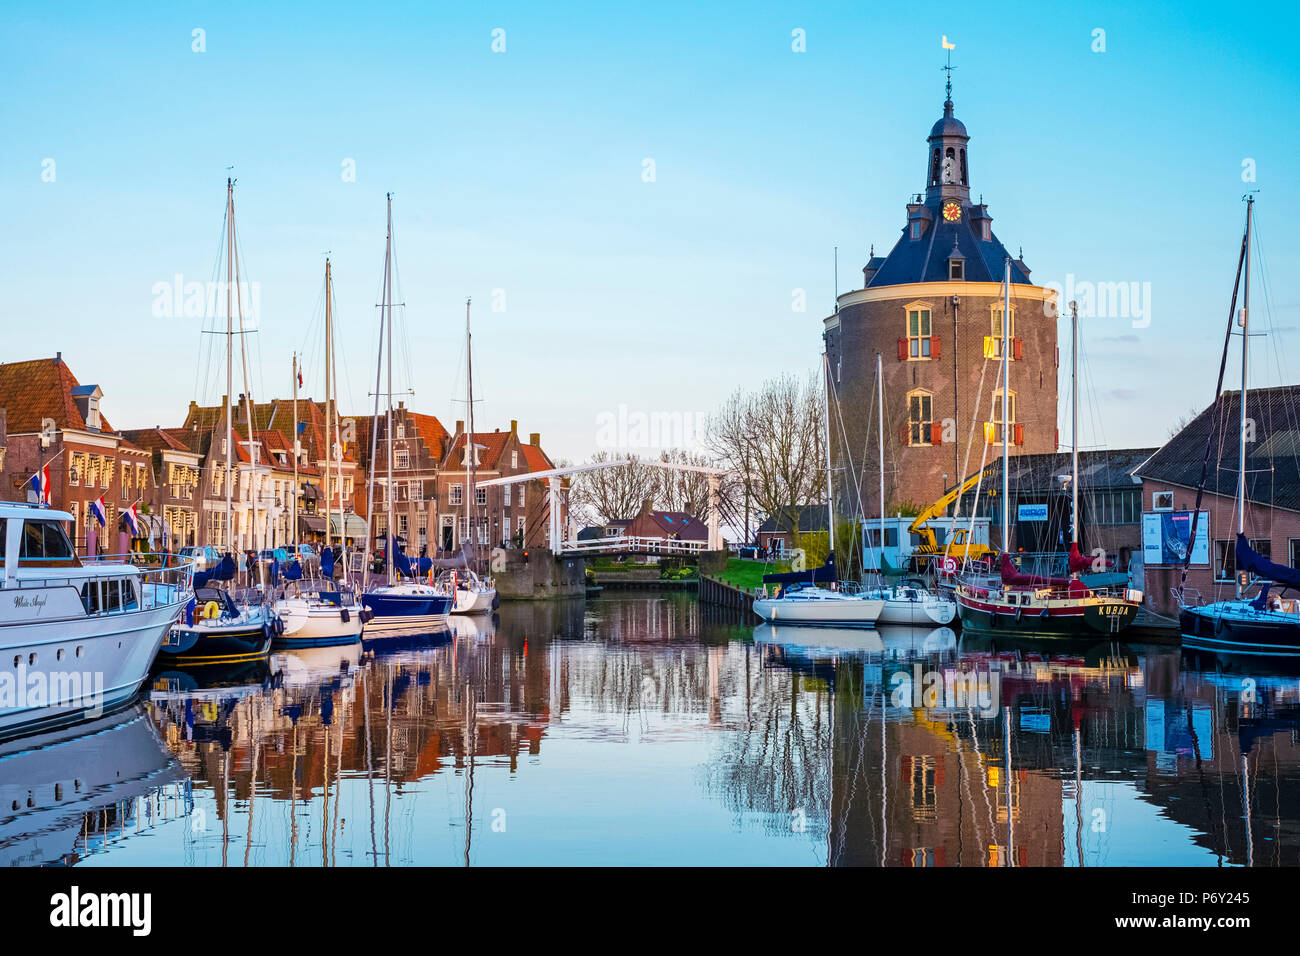 Pays Bas, Hollande du Nord, Enkhuizen. La tour historique Drommedaris, ancienne porte de ville à l'entrée de Oude Haven (vieux port). Banque D'Images